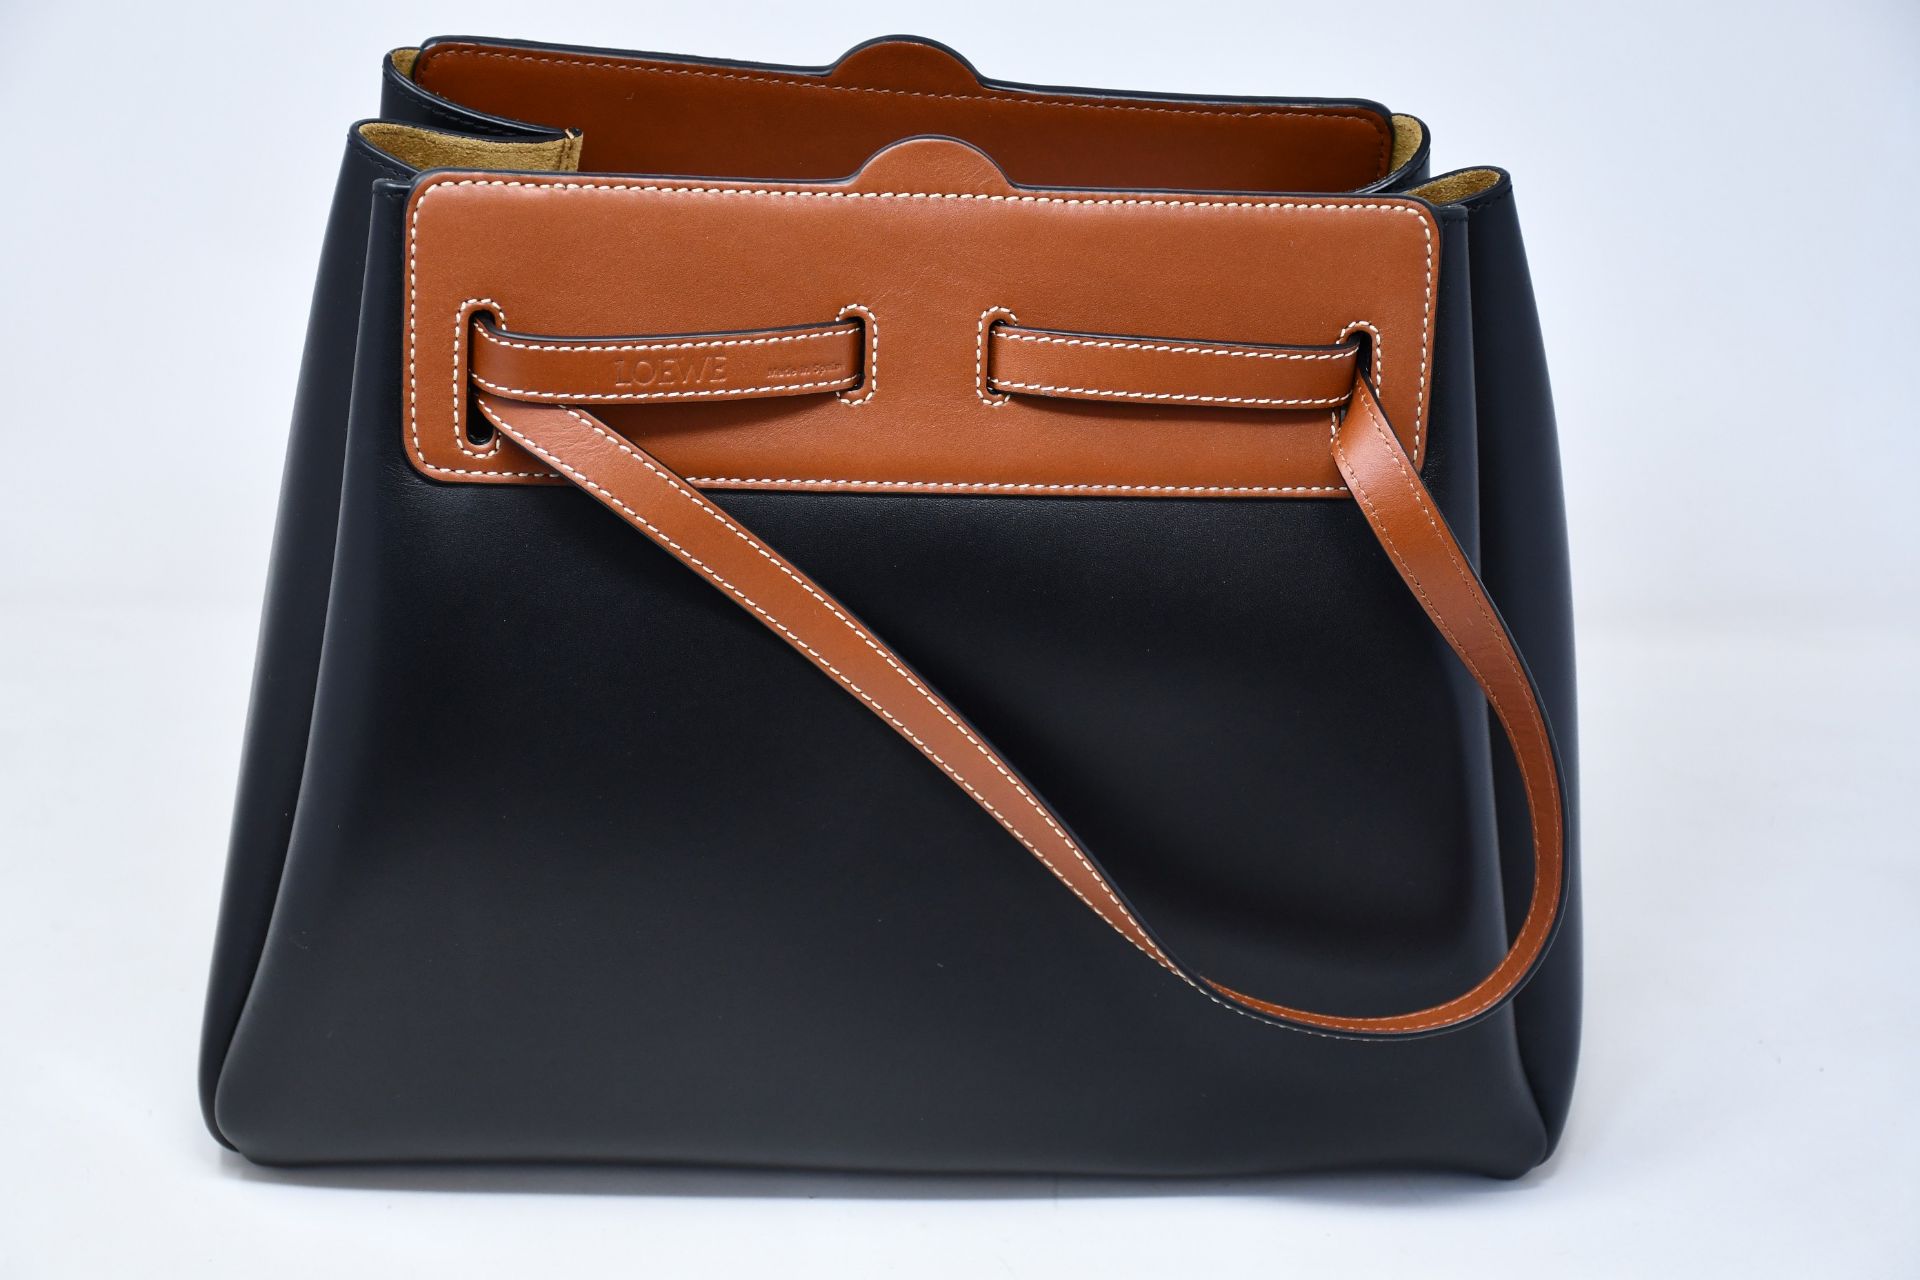 An as new Loewe Lazo shopper bag in black (RRP £1750).